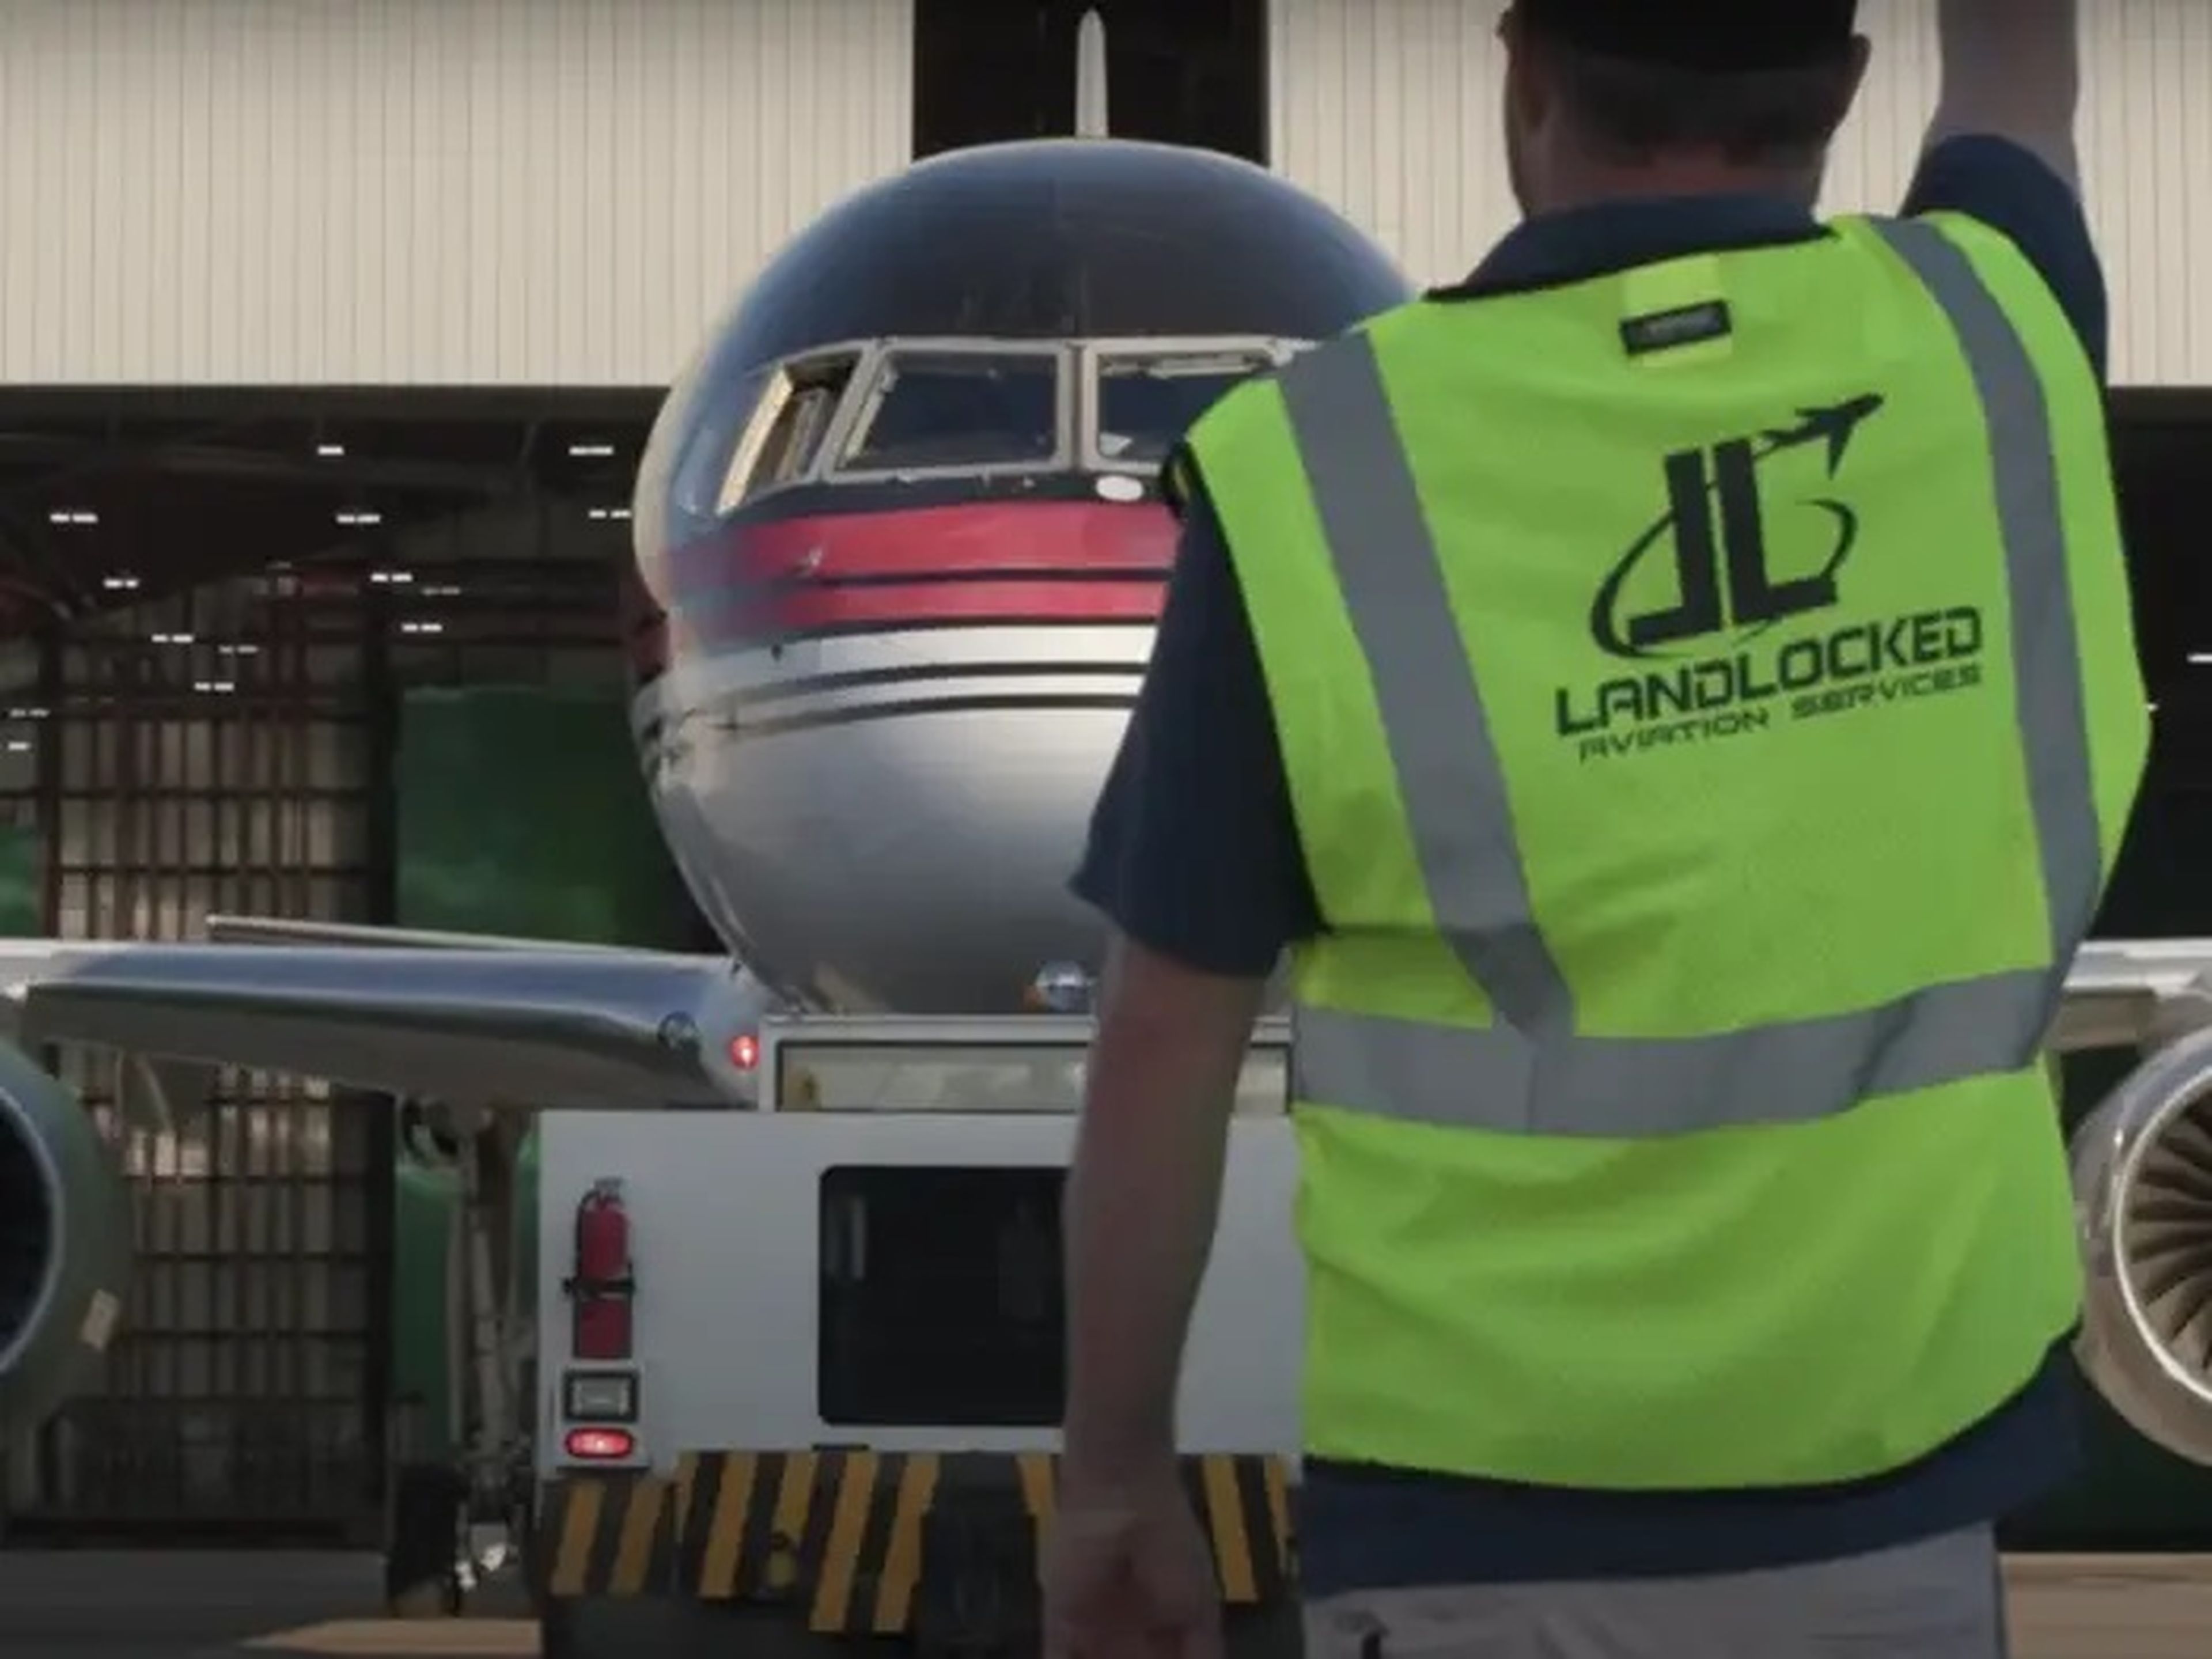 El 757 de Trump entrando en el taller de pintura de Landlocked Aviation.